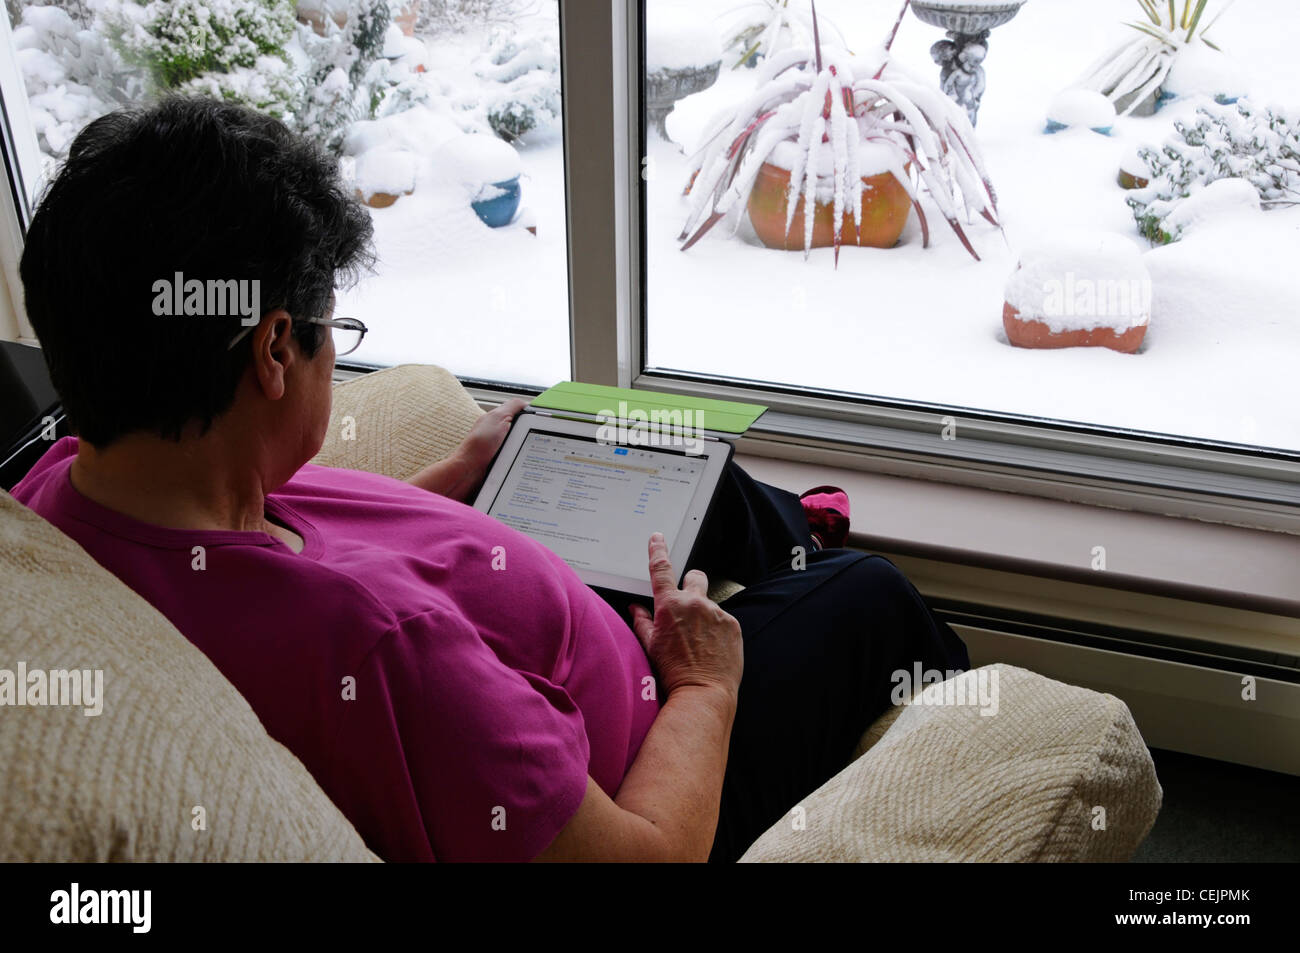 Donna anziana pensionata matura che detiene Apple iPad Tablet computer digitale selezione delle applicazioni per finestra seduta in poltrona neve invernale all'esterno Inghilterra Regno Unito Foto Stock